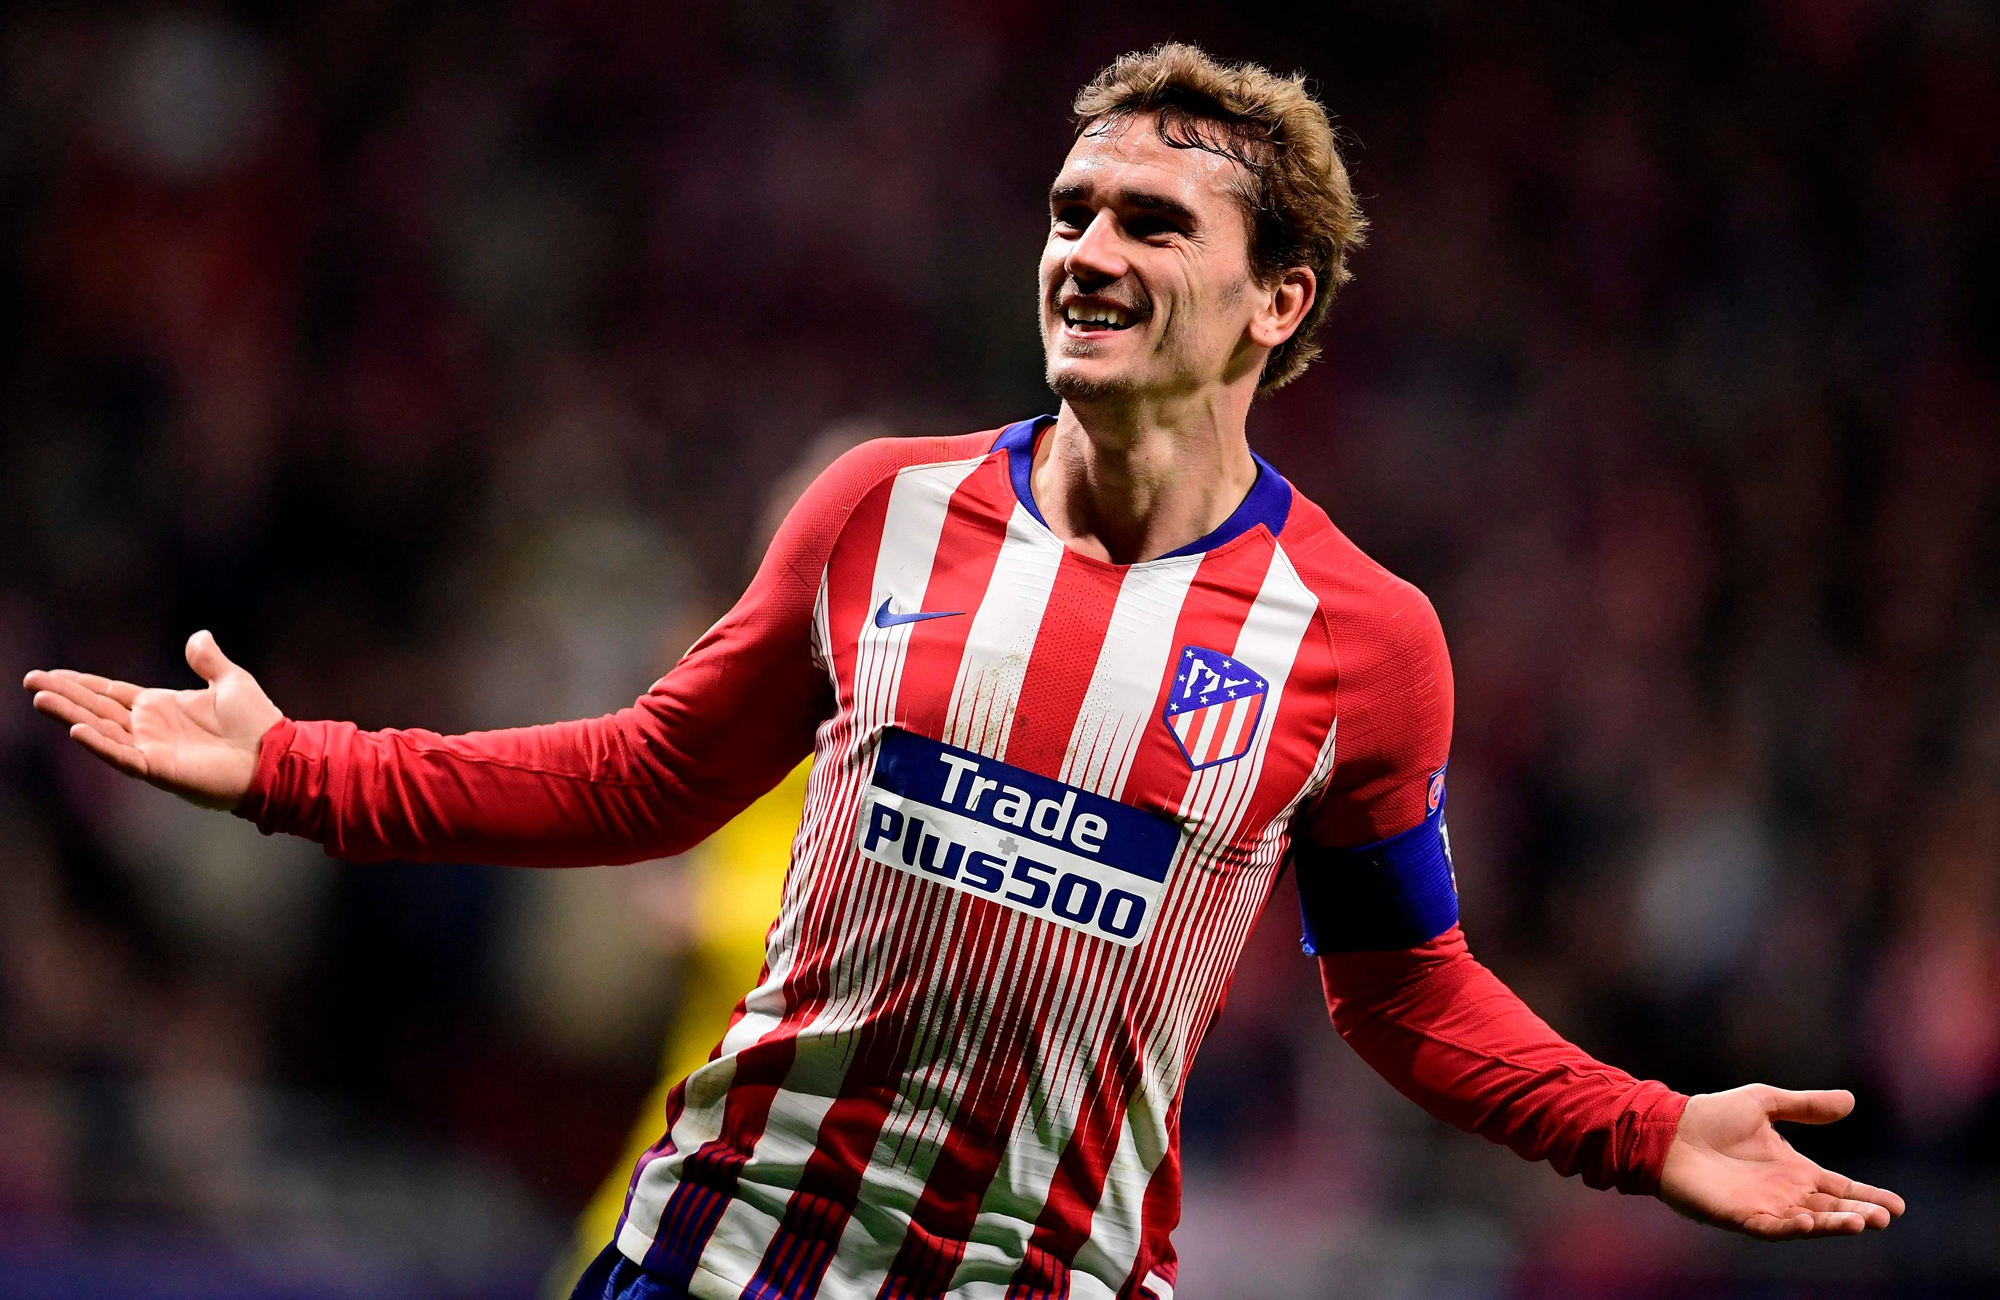 Antoine Griezmann - Atlético Madrid - Griezmann Champions League 2019 , HD Wallpaper & Backgrounds